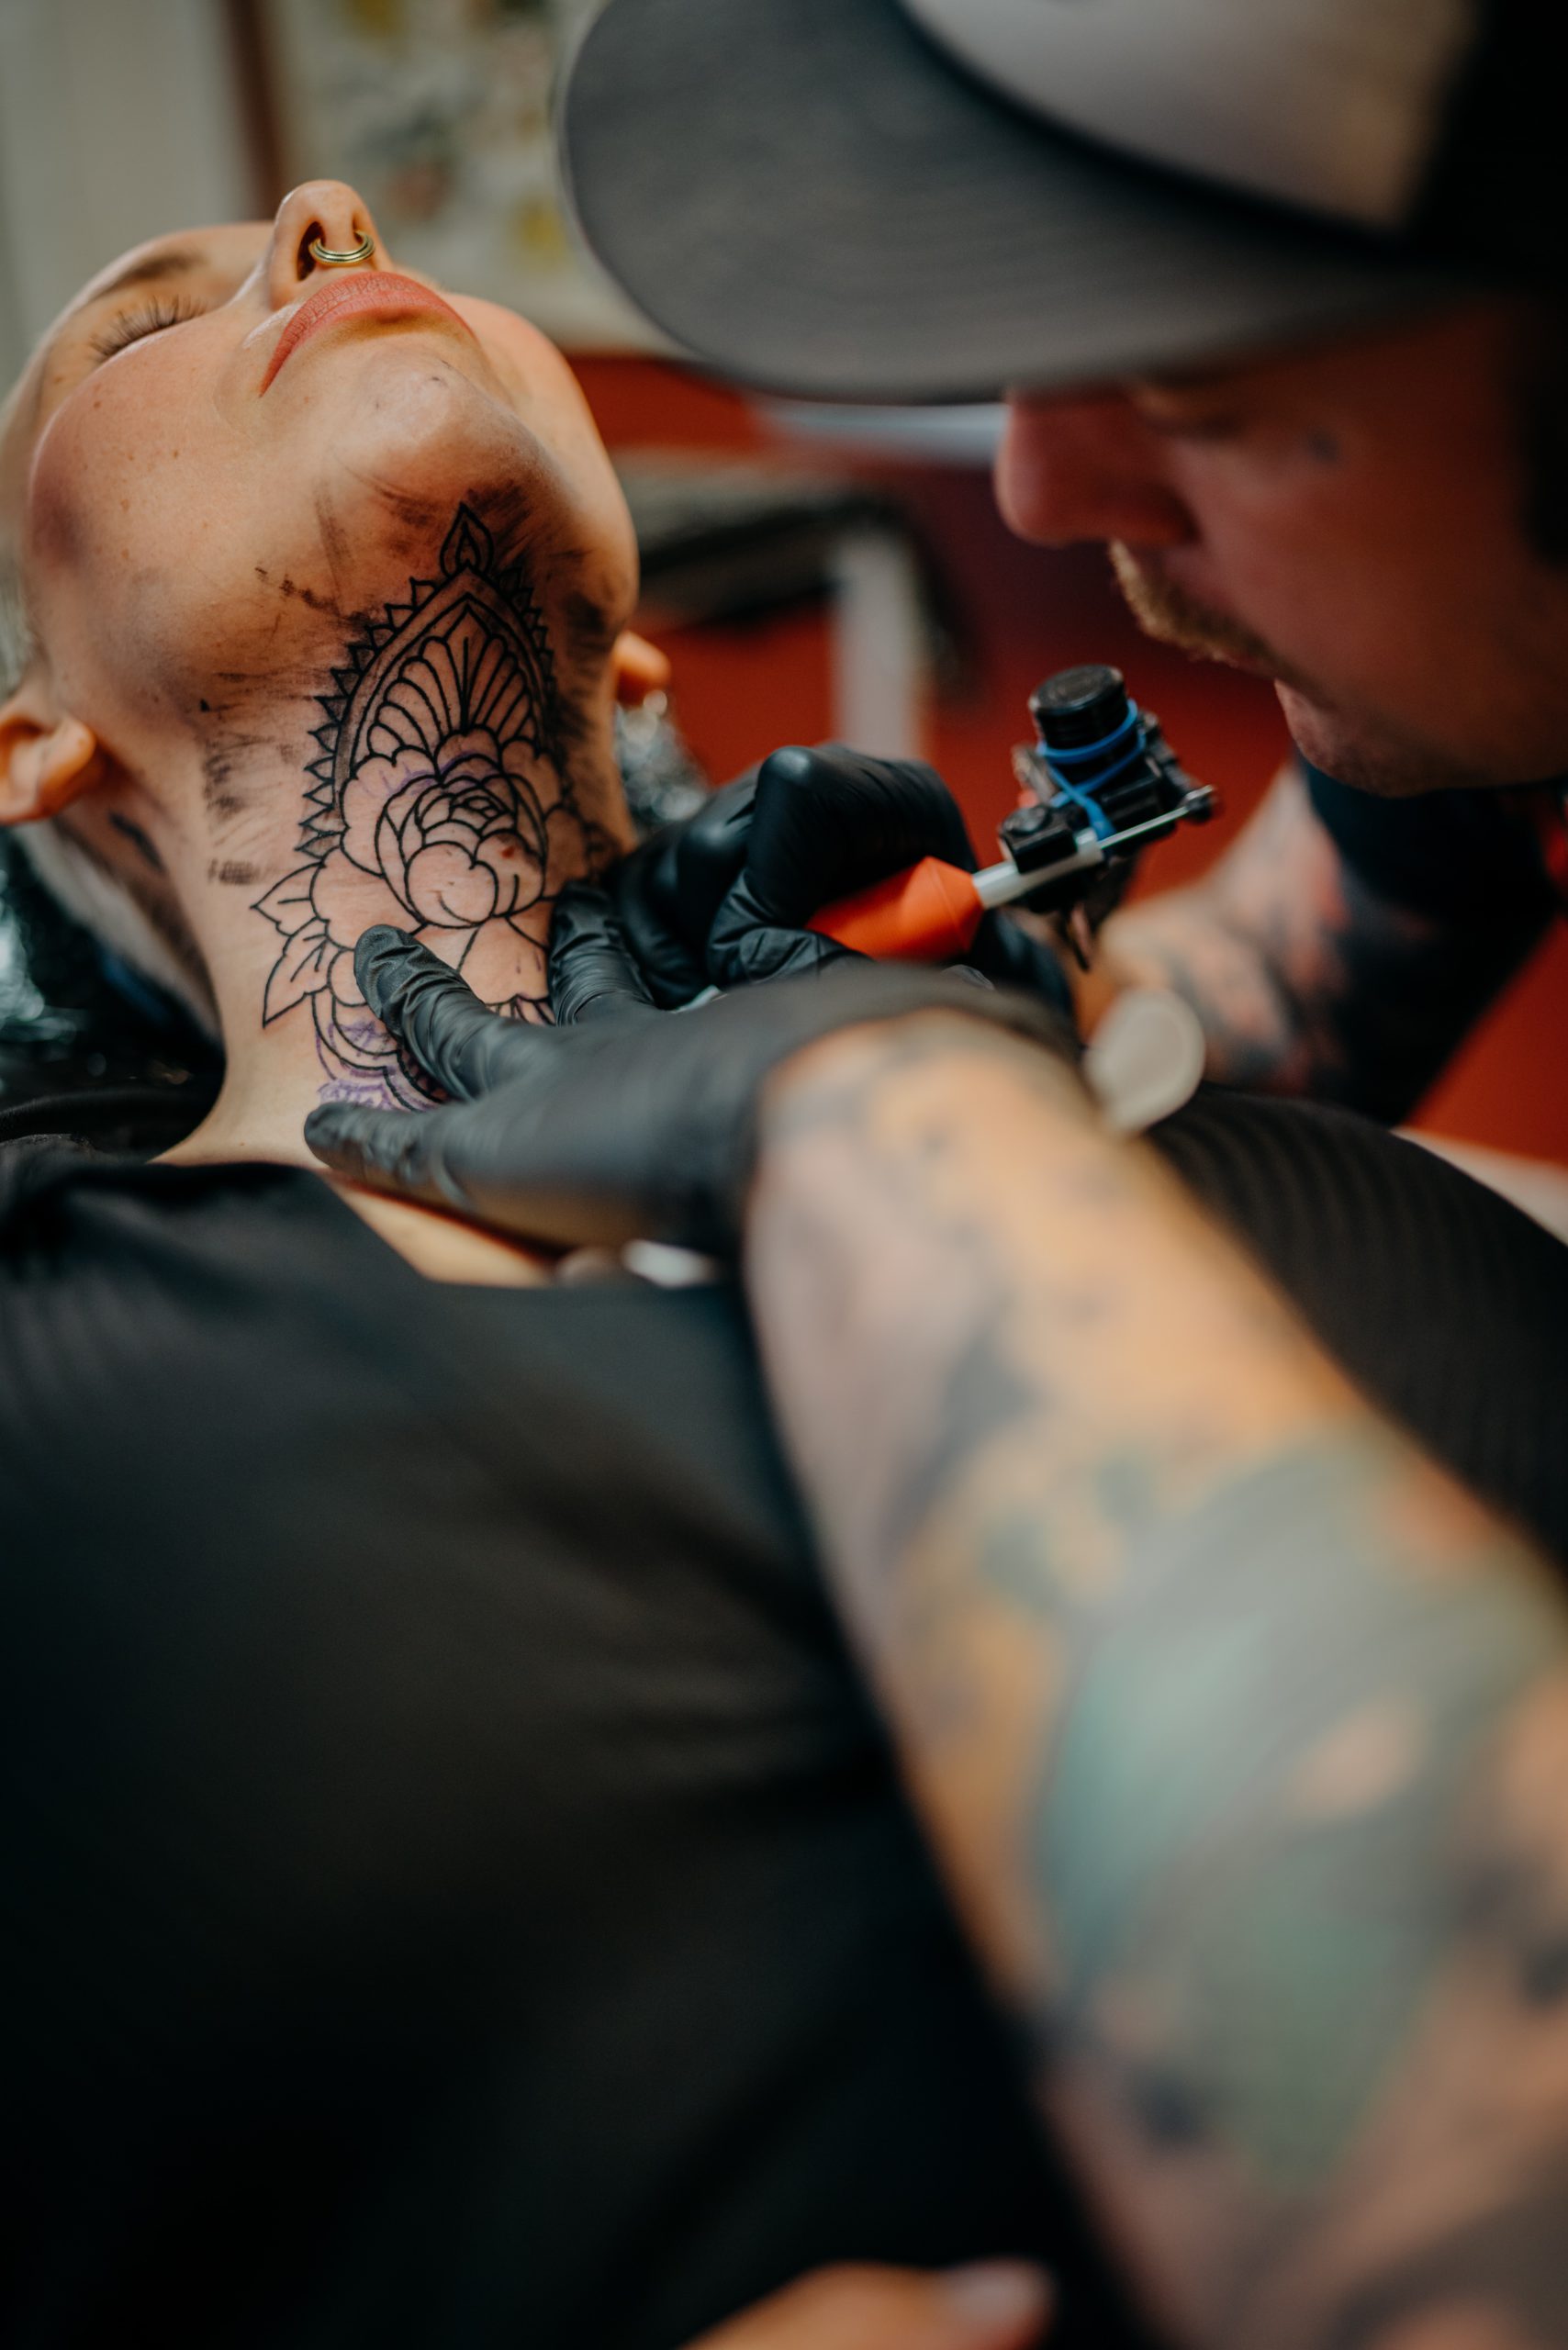 Tatuagens de frases: onde fazer e o que tatuar - Blog Tattoo2me